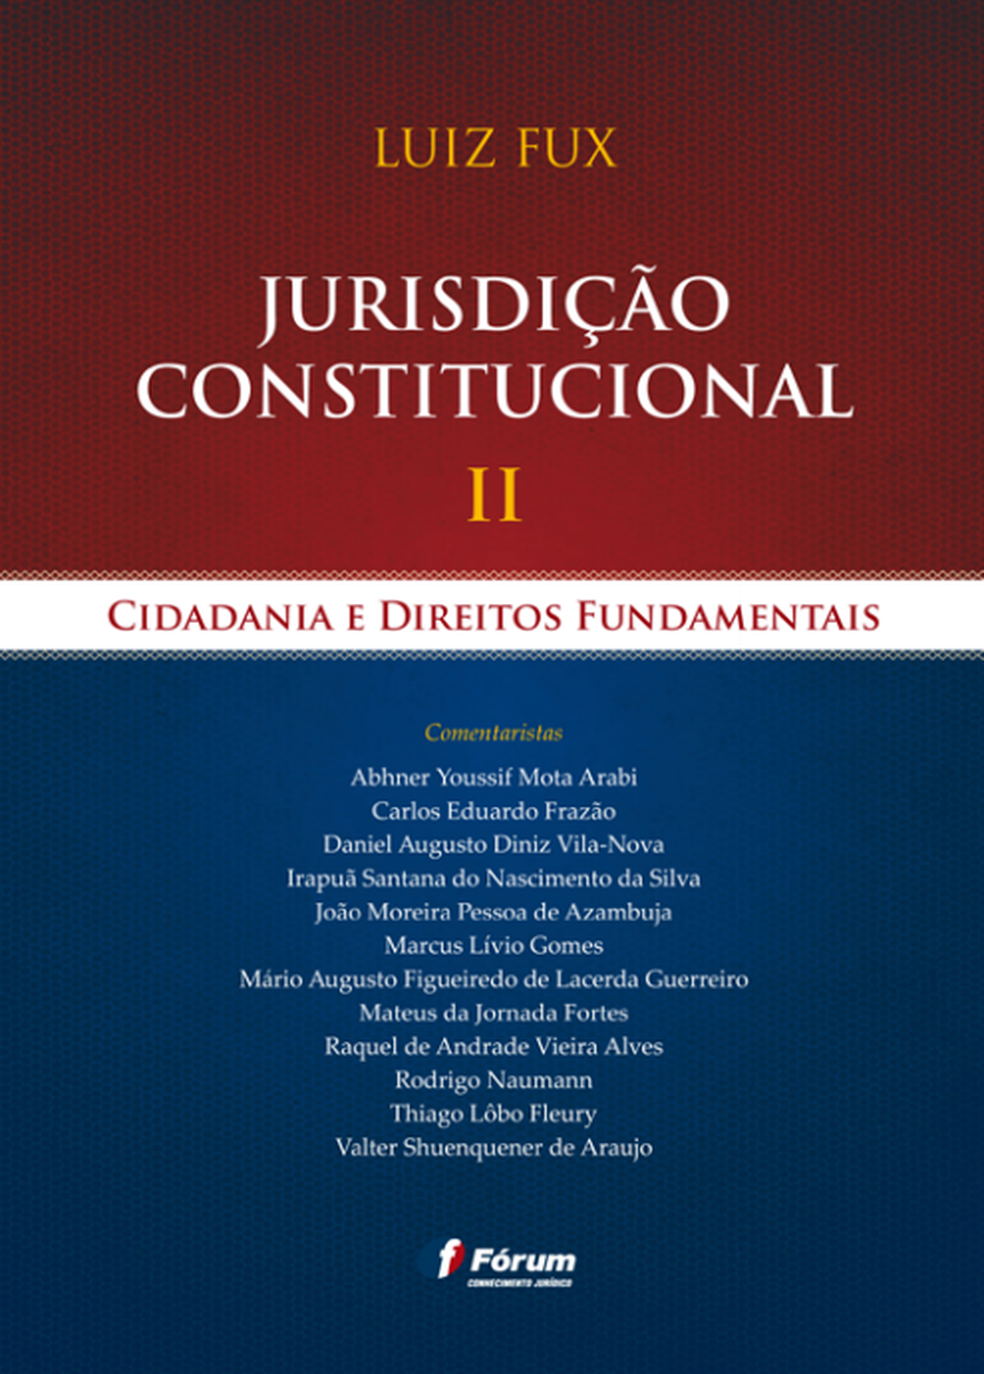 Capa do livro 'Jurisdição constitucional II - Cidadania e direitos fundamentais